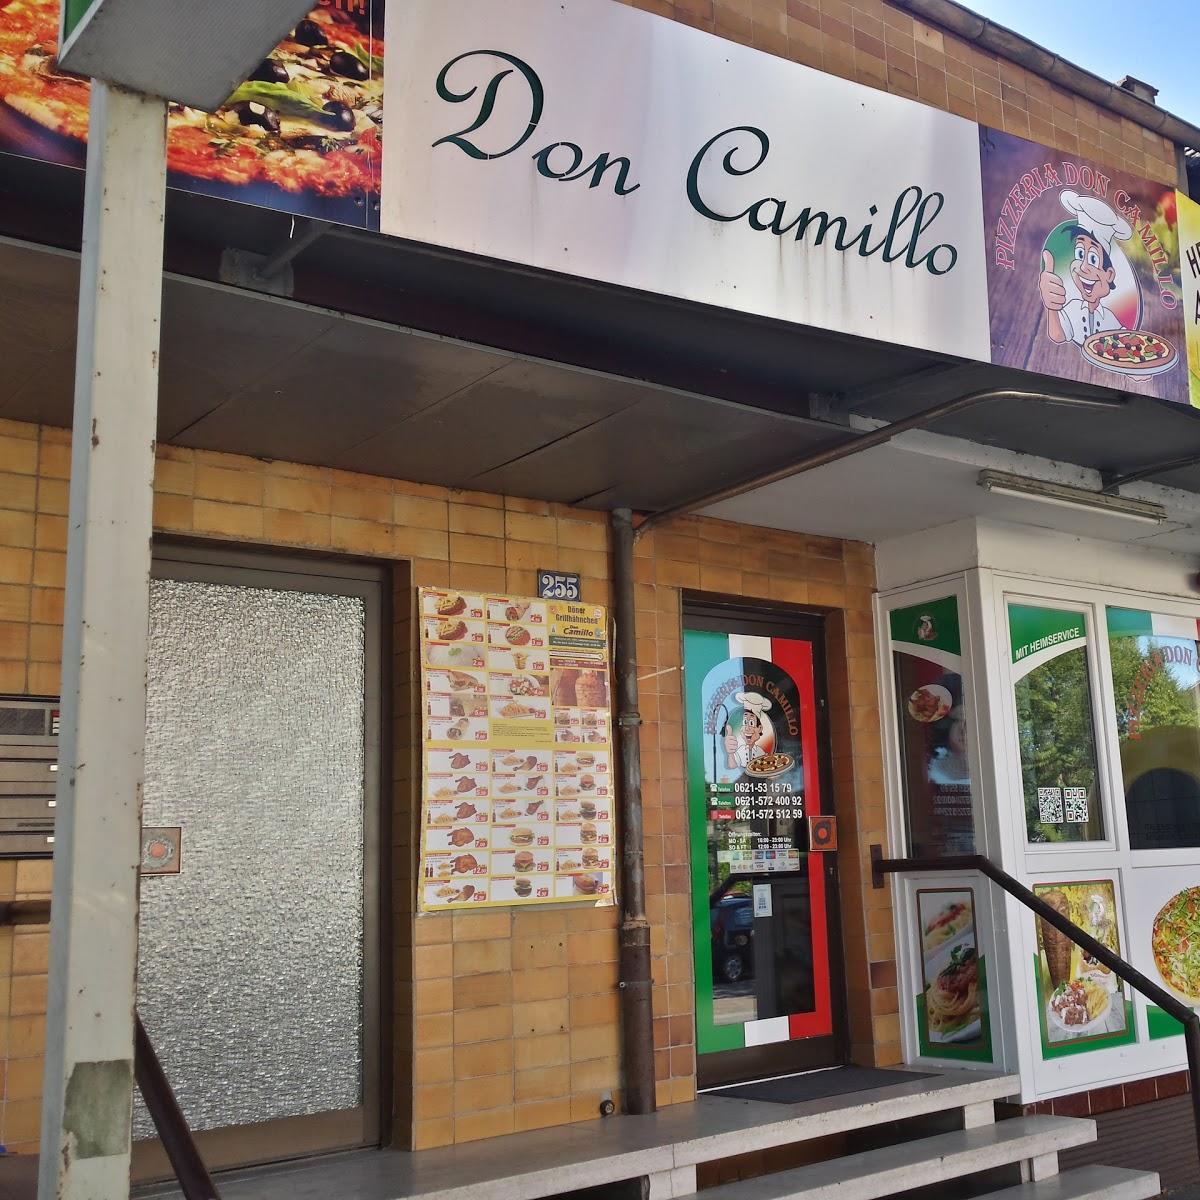 Restaurant "Pizzeria Heimservice Don Camillo" in Ludwigshafen am Rhein